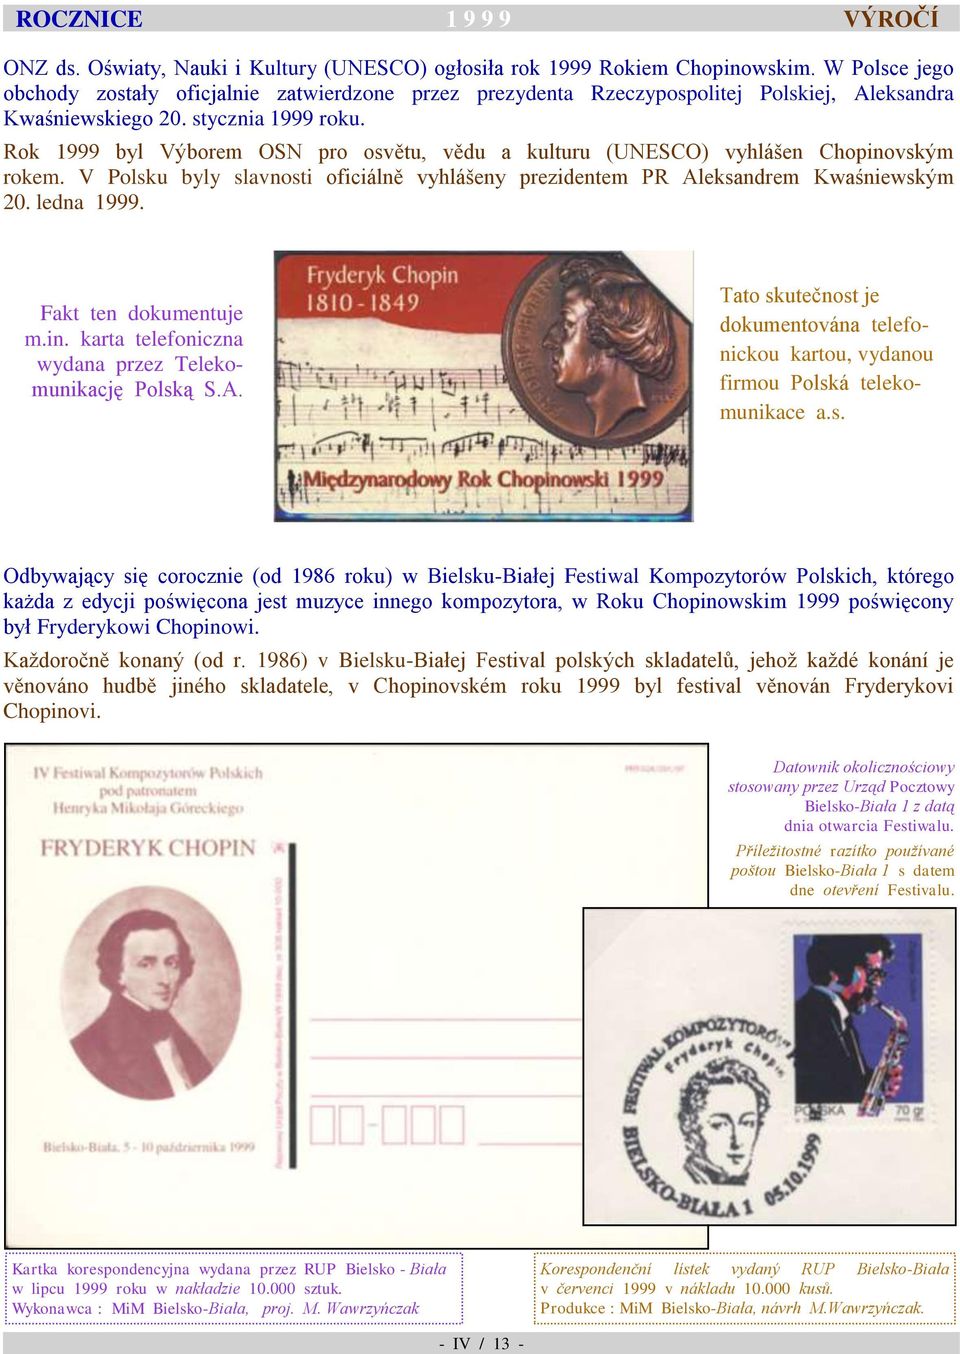 Rok 1999 byl Výborem OSN pro osvětu, vědu a kulturu (UNESCO) vyhlášen Chopinovským rokem. V Polsku byly slavnosti oficiálně vyhlášeny prezidentem PR Aleksandrem Kwaśniewským 20. ledna 1999.